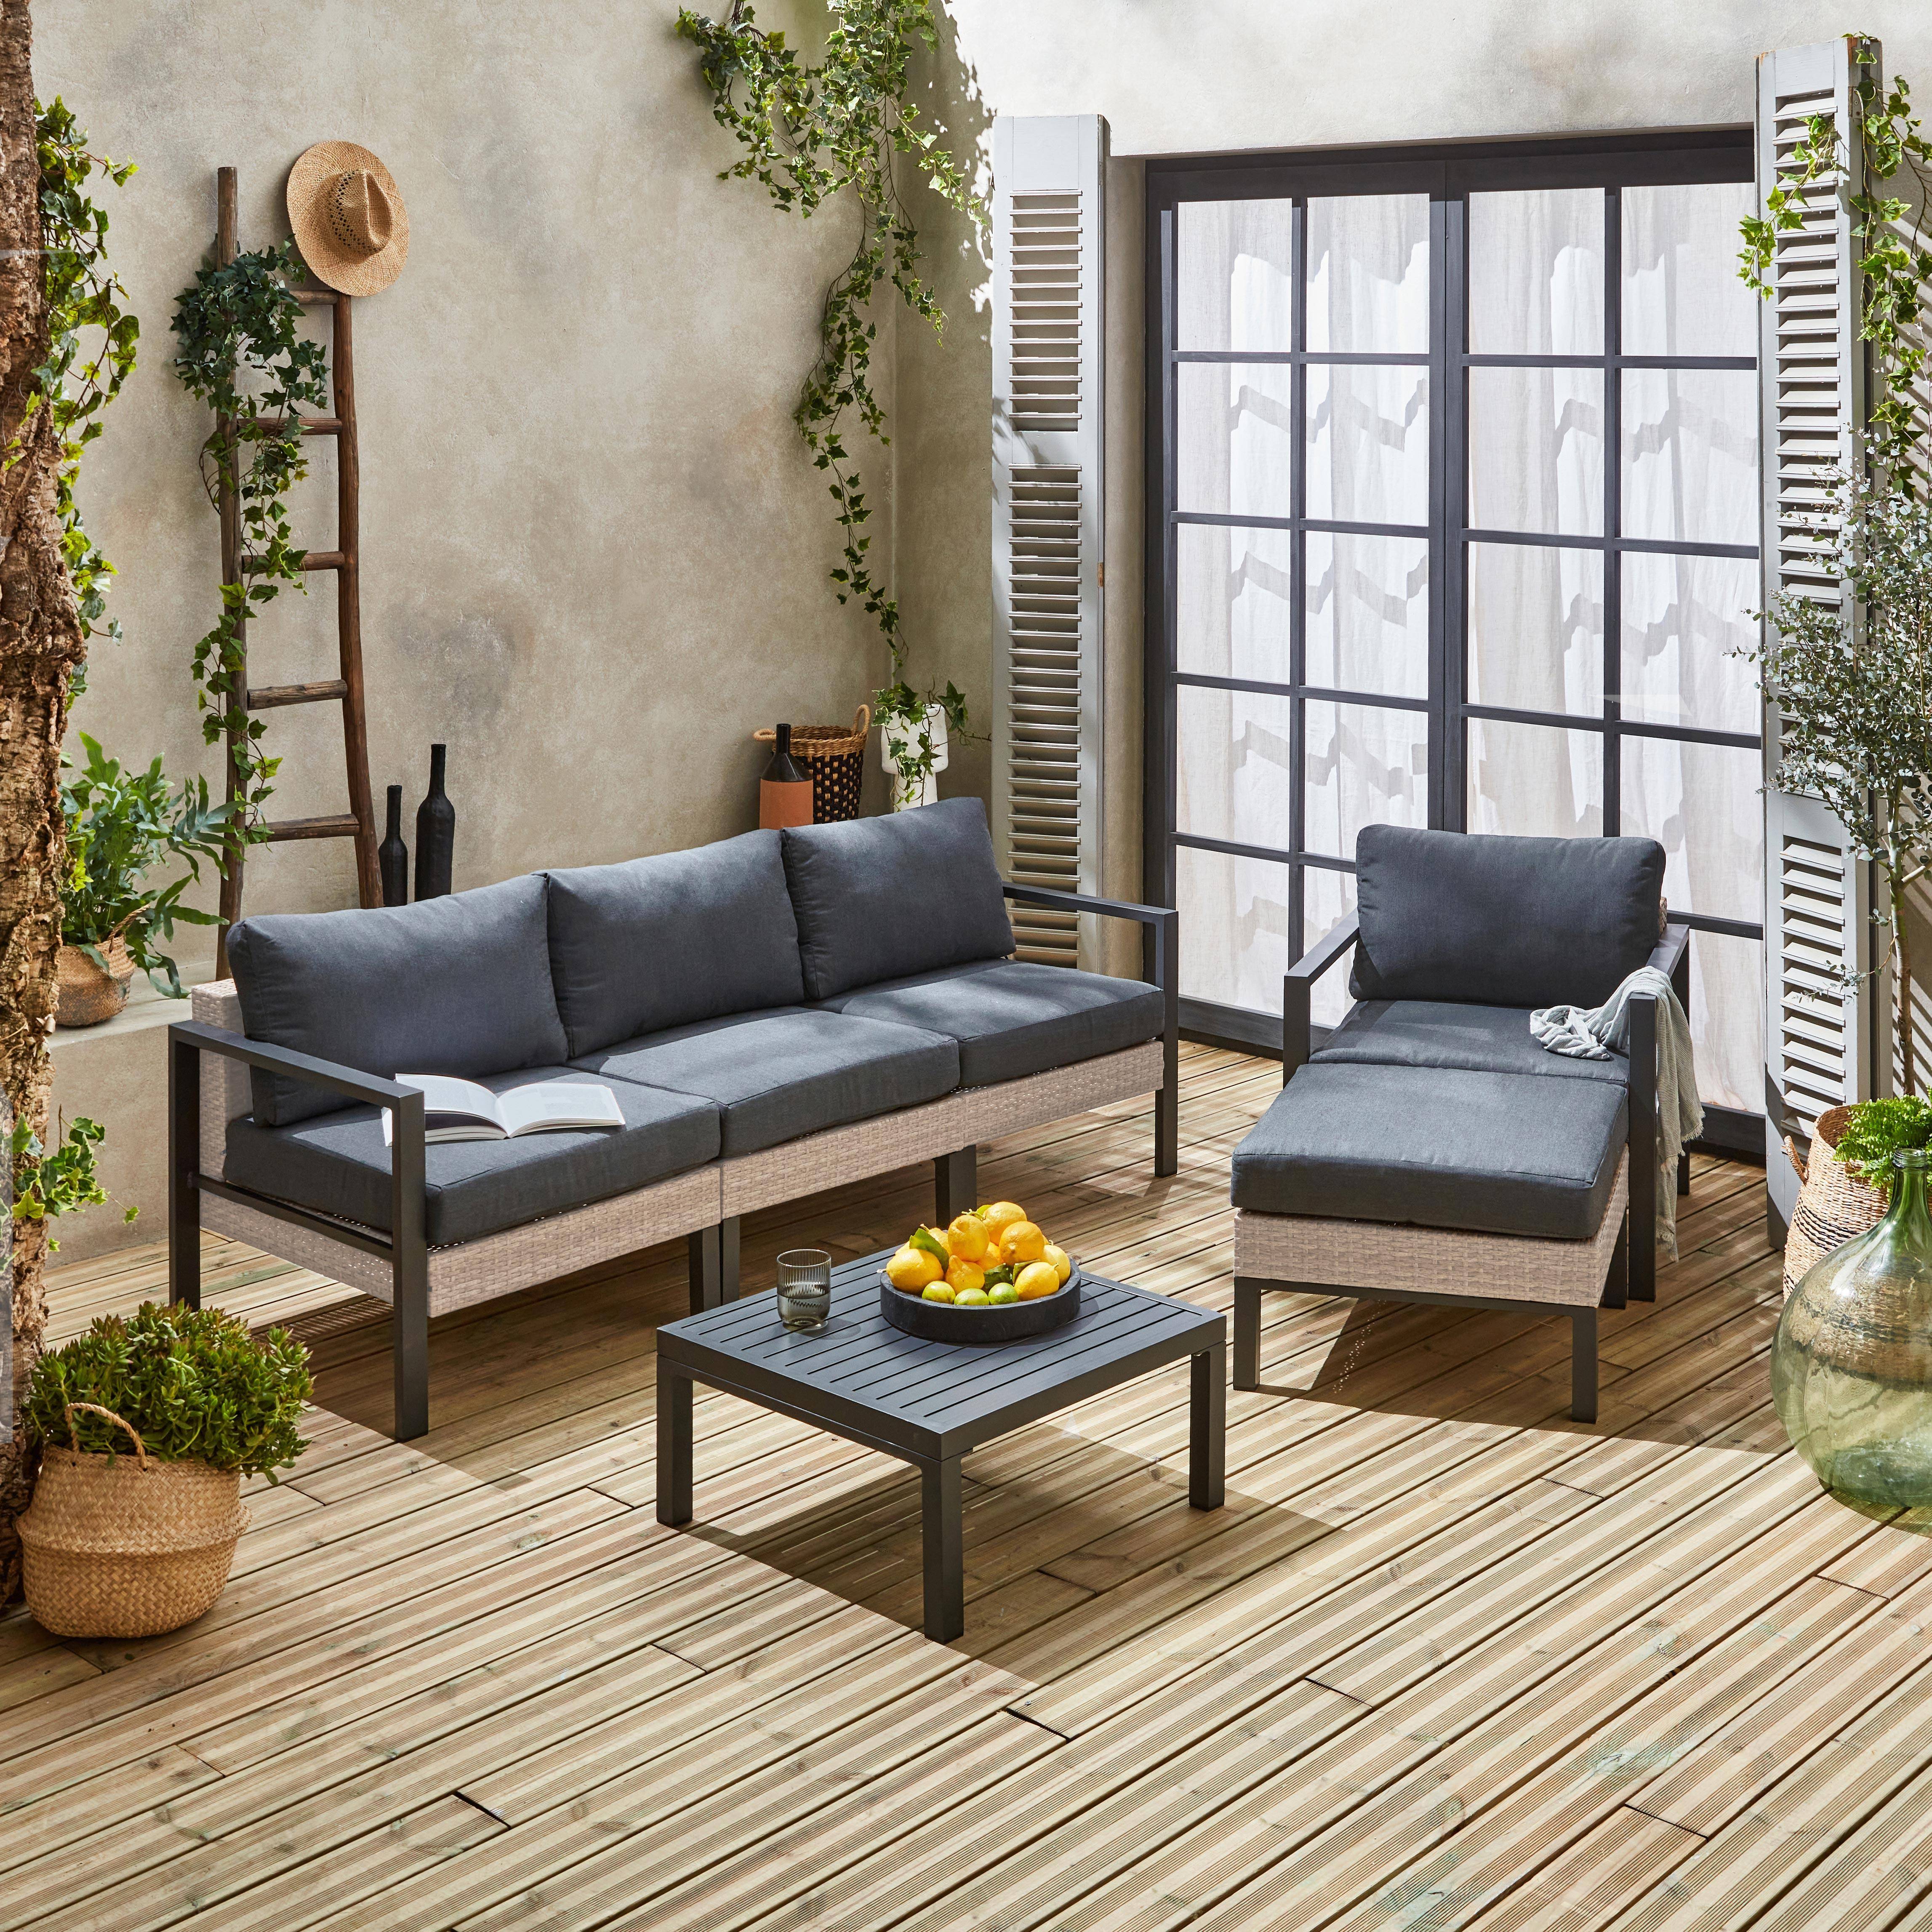 Sombrillas de patio: Guía completa de muebles para exteriores